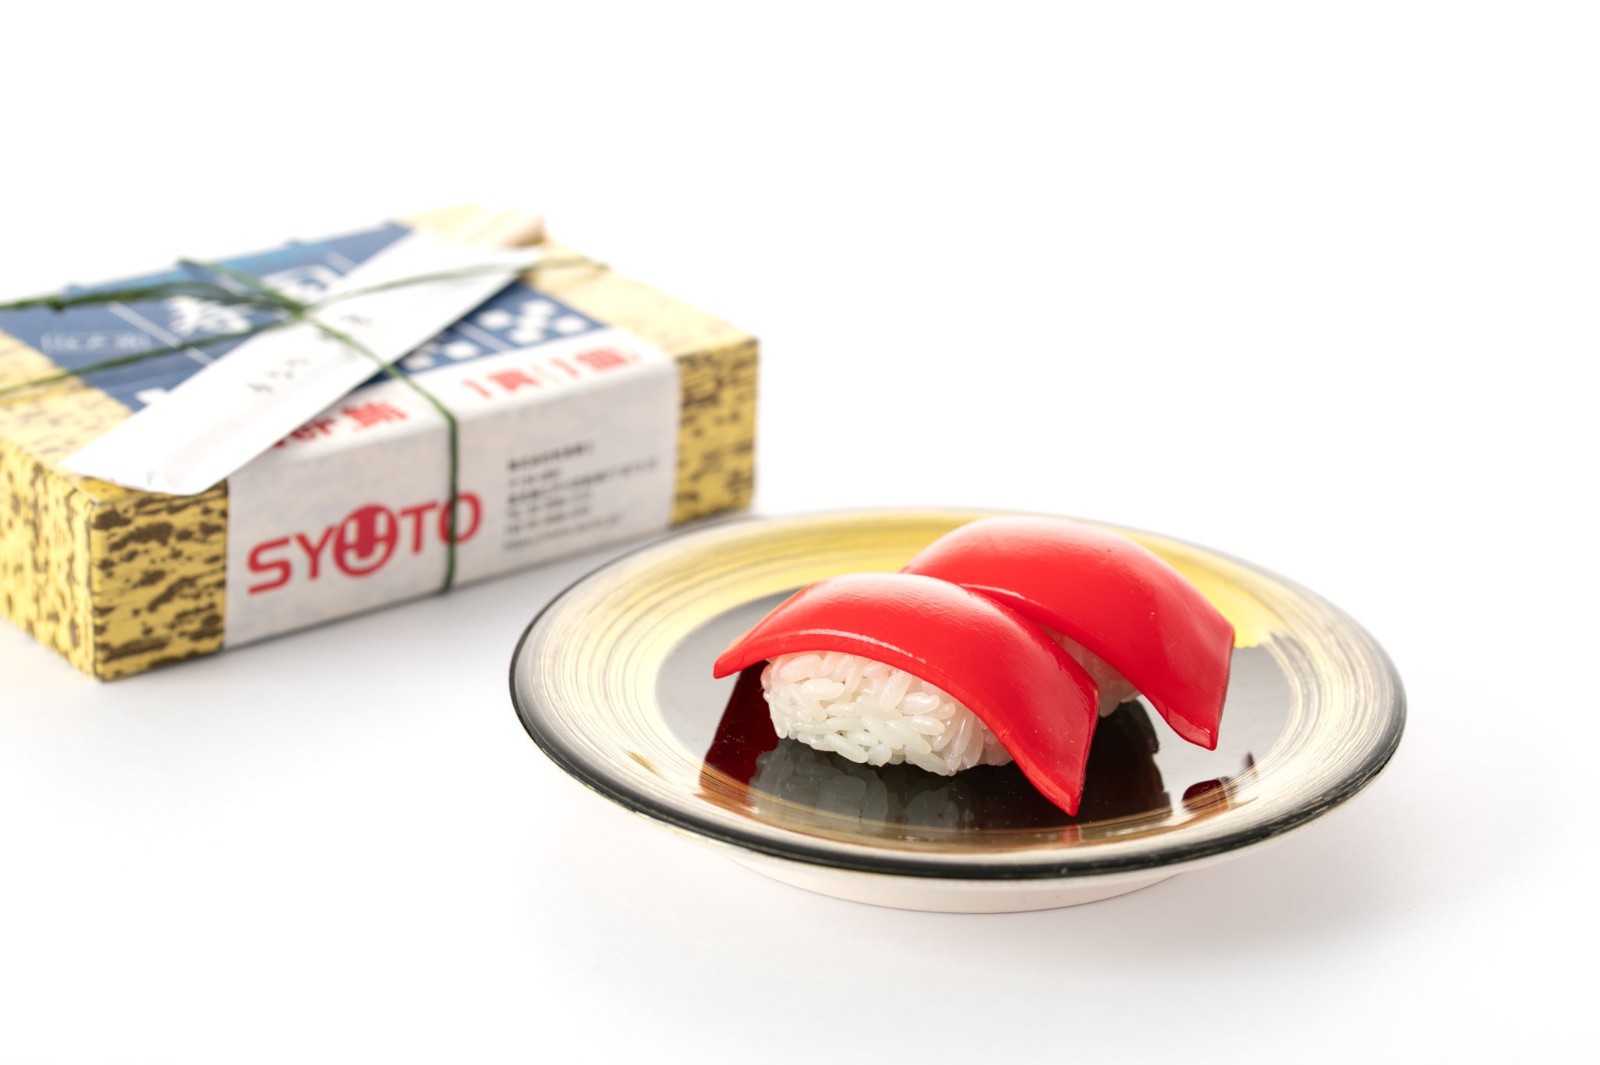 奇葩寿司拼装模型公开 多达364粒米颗颗再现一一拼装